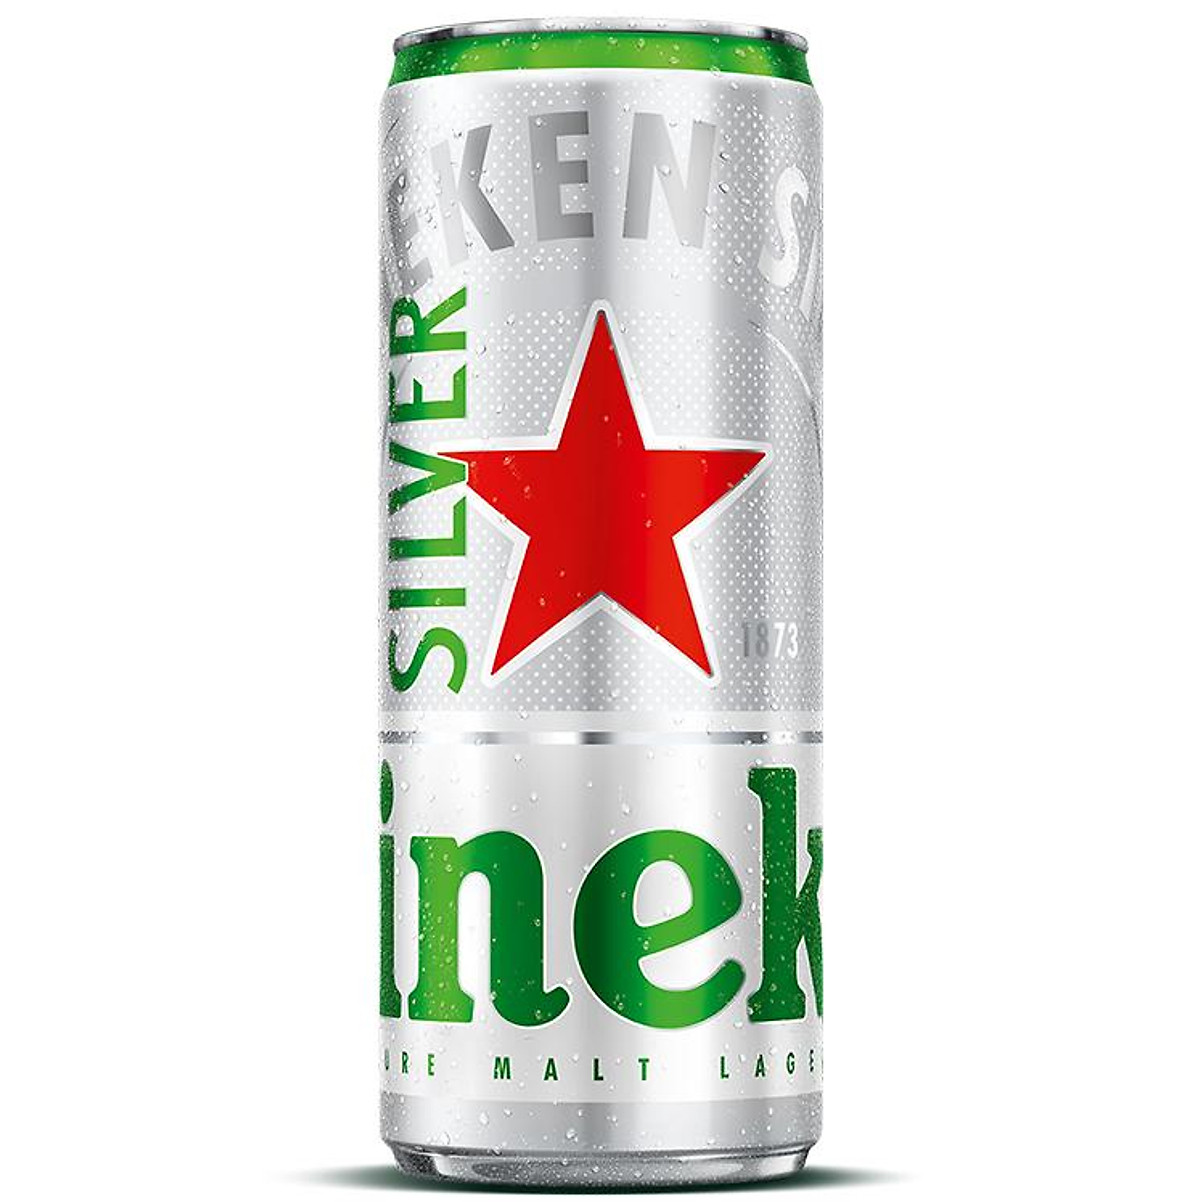 Lon bia Heineken Silver 330ml - Bia, cider